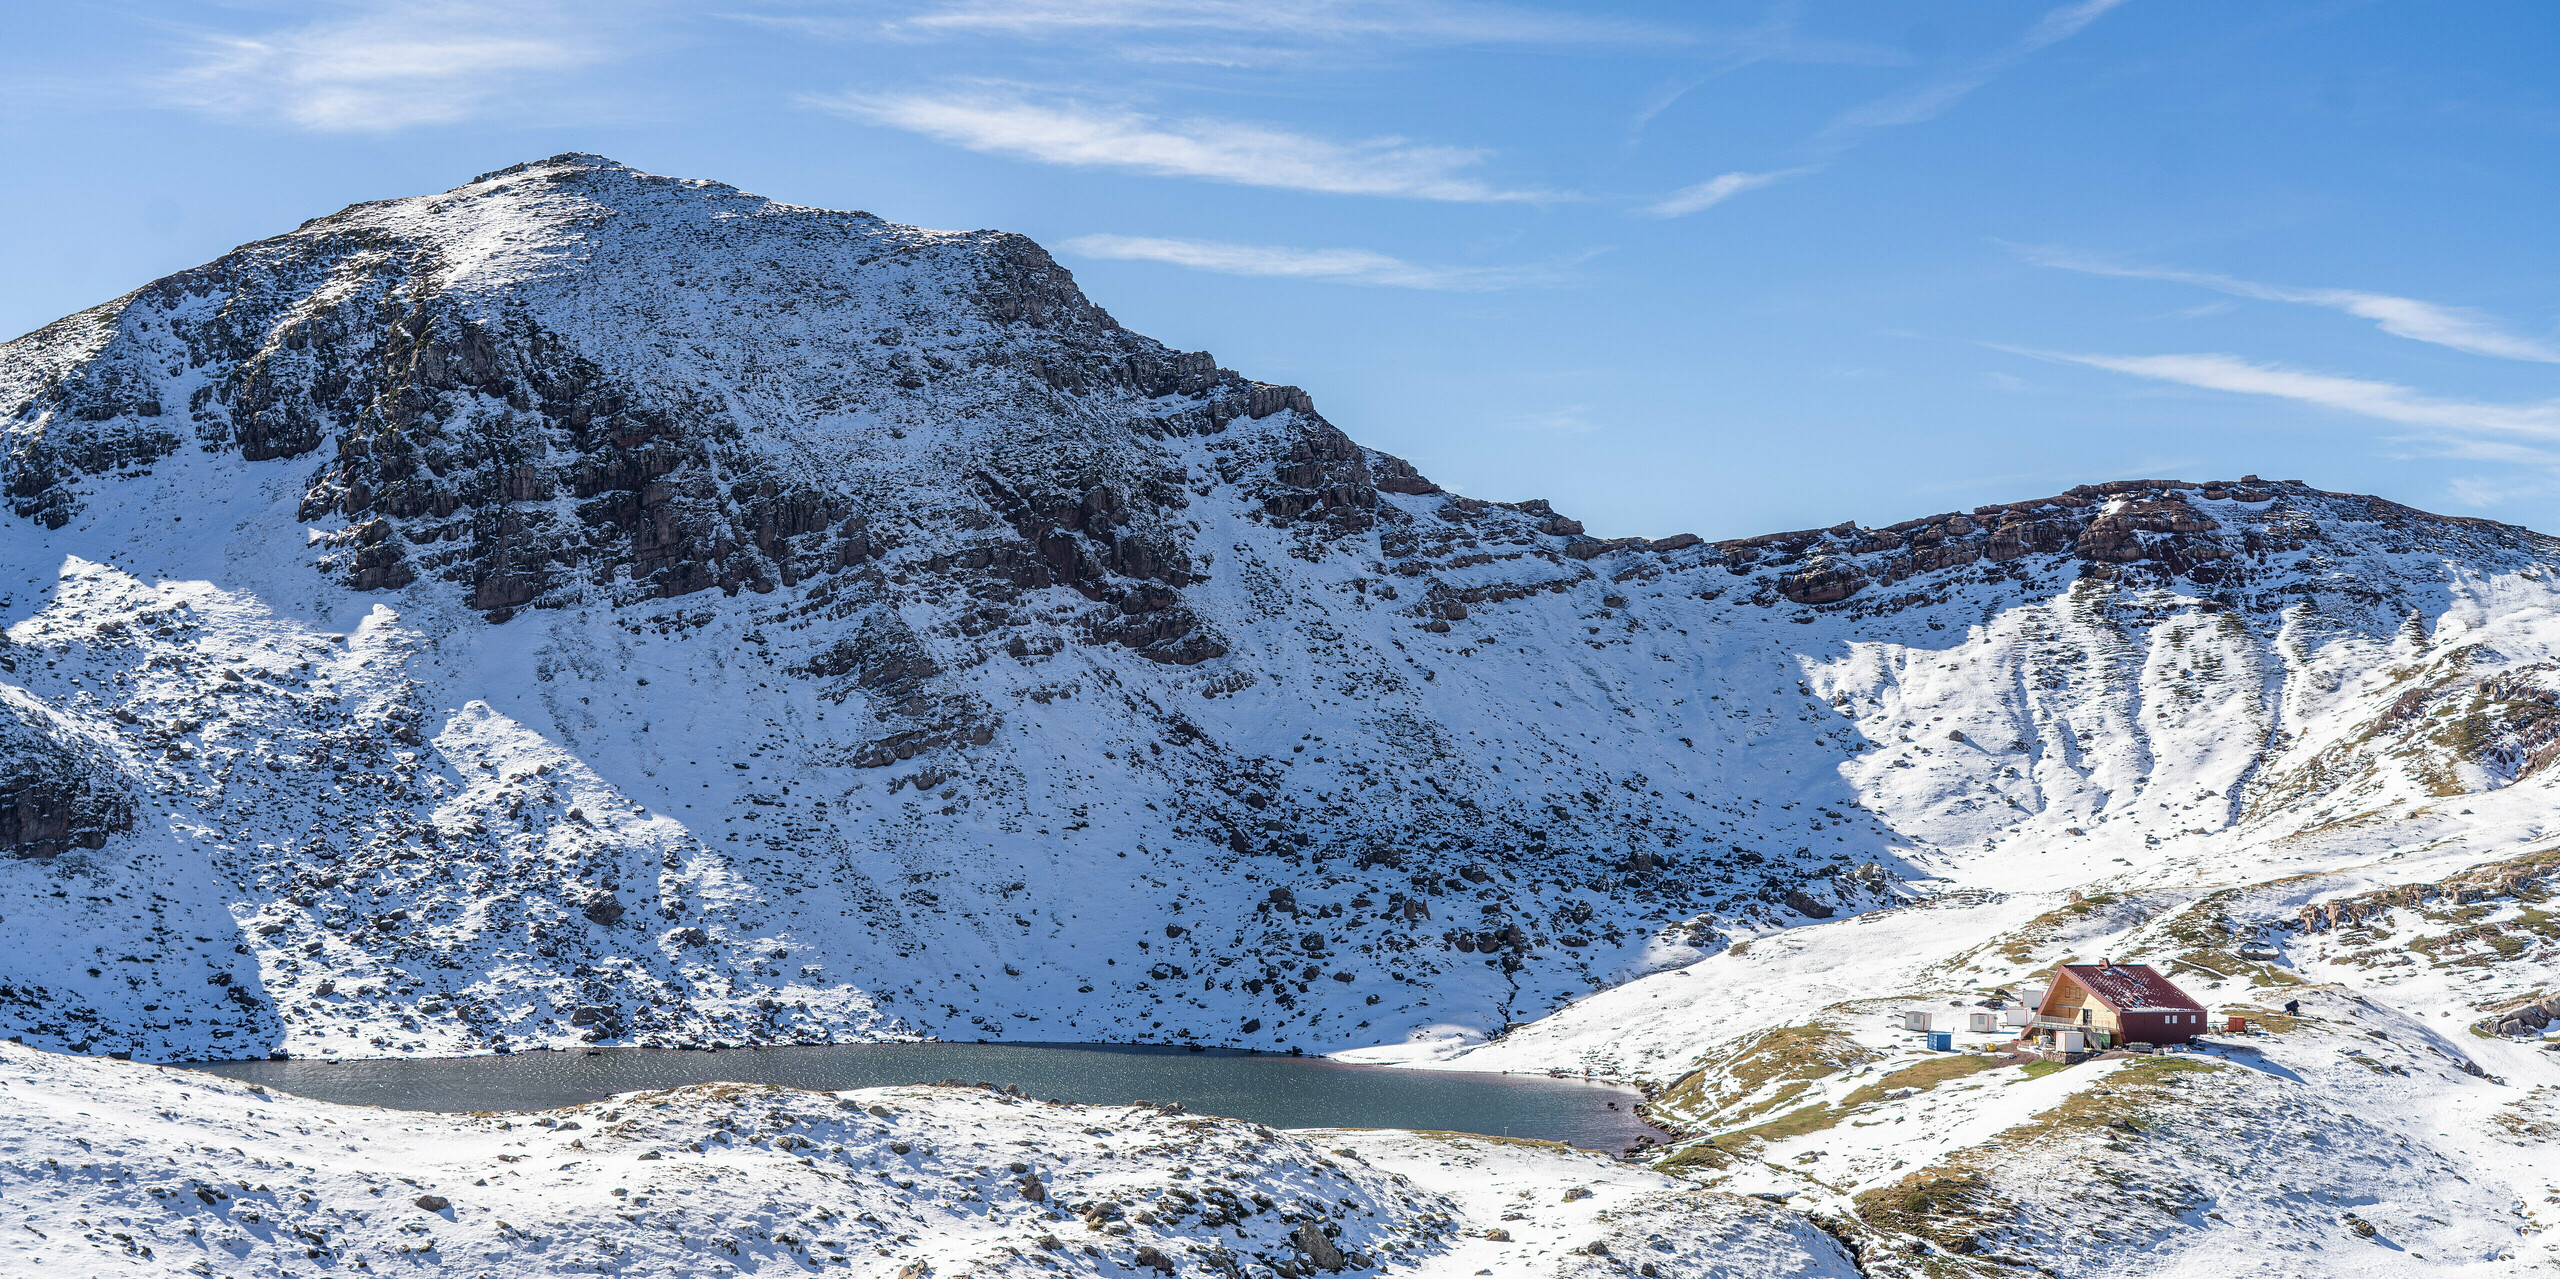 Traumhafte Berglandschaft mit Schnee und blauen Himmel rund um die Schutzhütte Arlet im Pyrenäen-Nationalpark